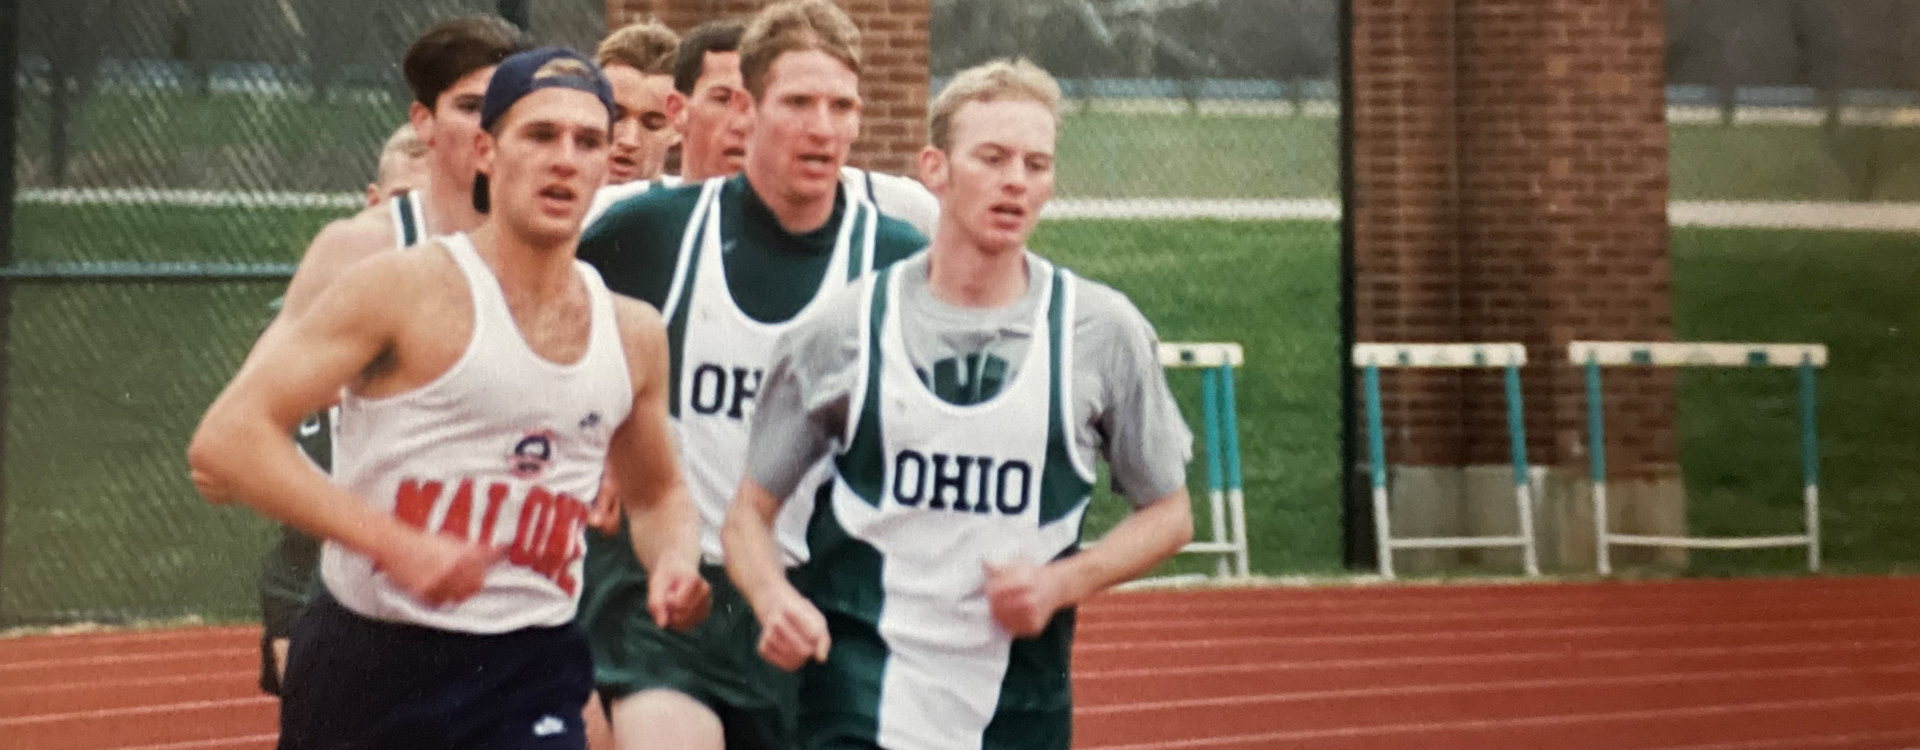 Ben Myers Running for Ohio University